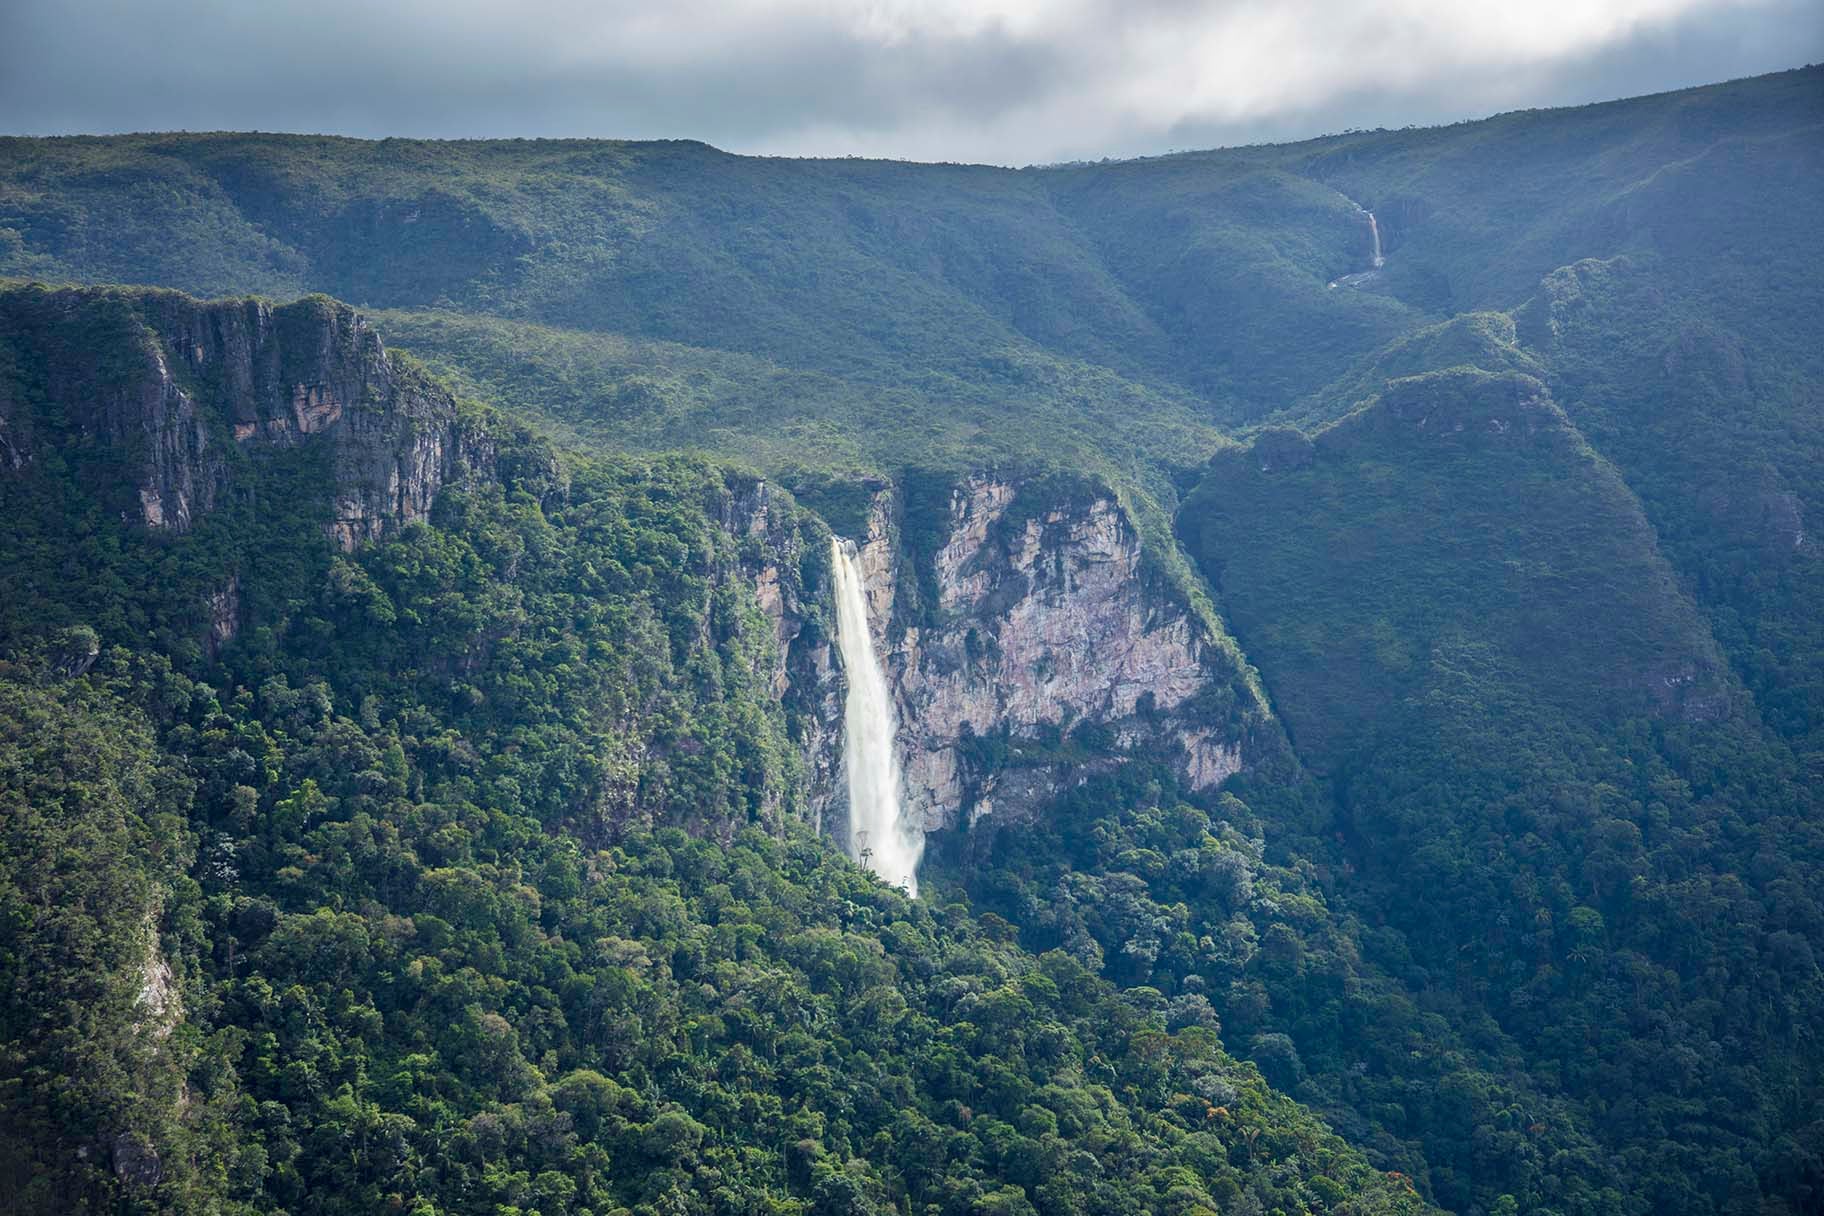 Mount Aracá, Brazil